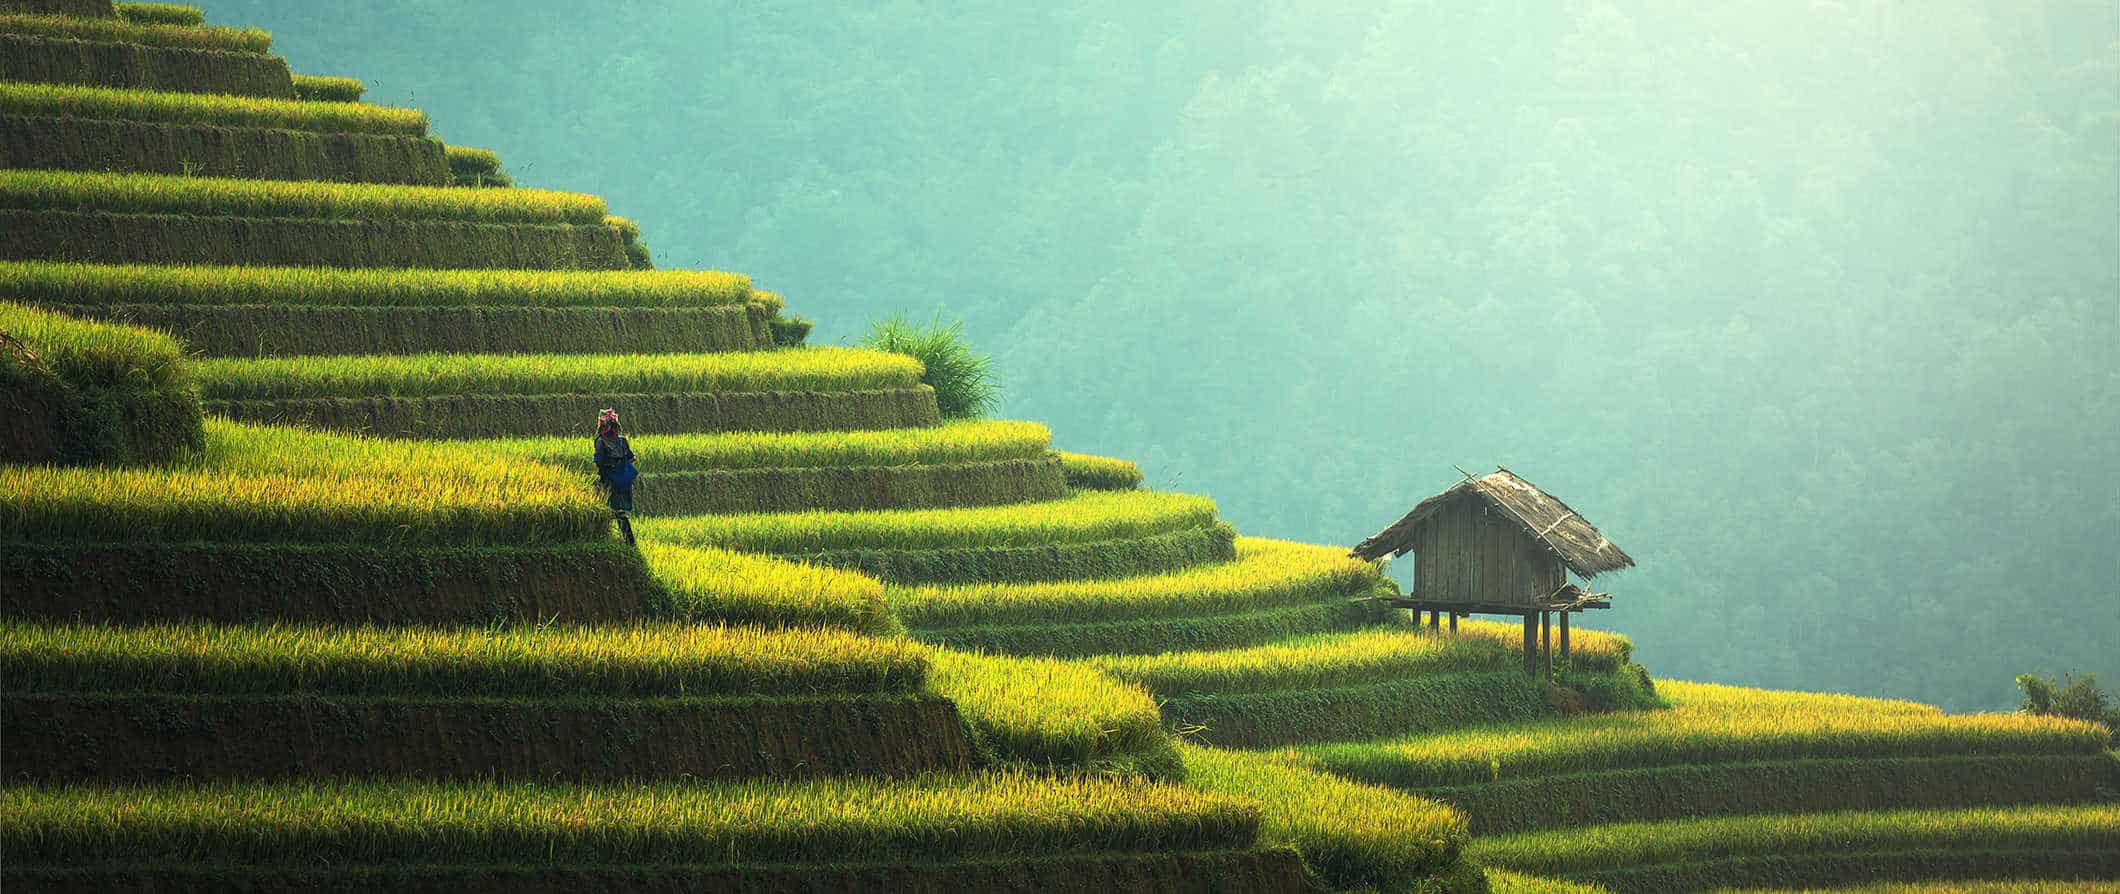 Um homem solitário está em terraços de arroz verdejantes no sudeste da Ásia em um dia ensolarado.